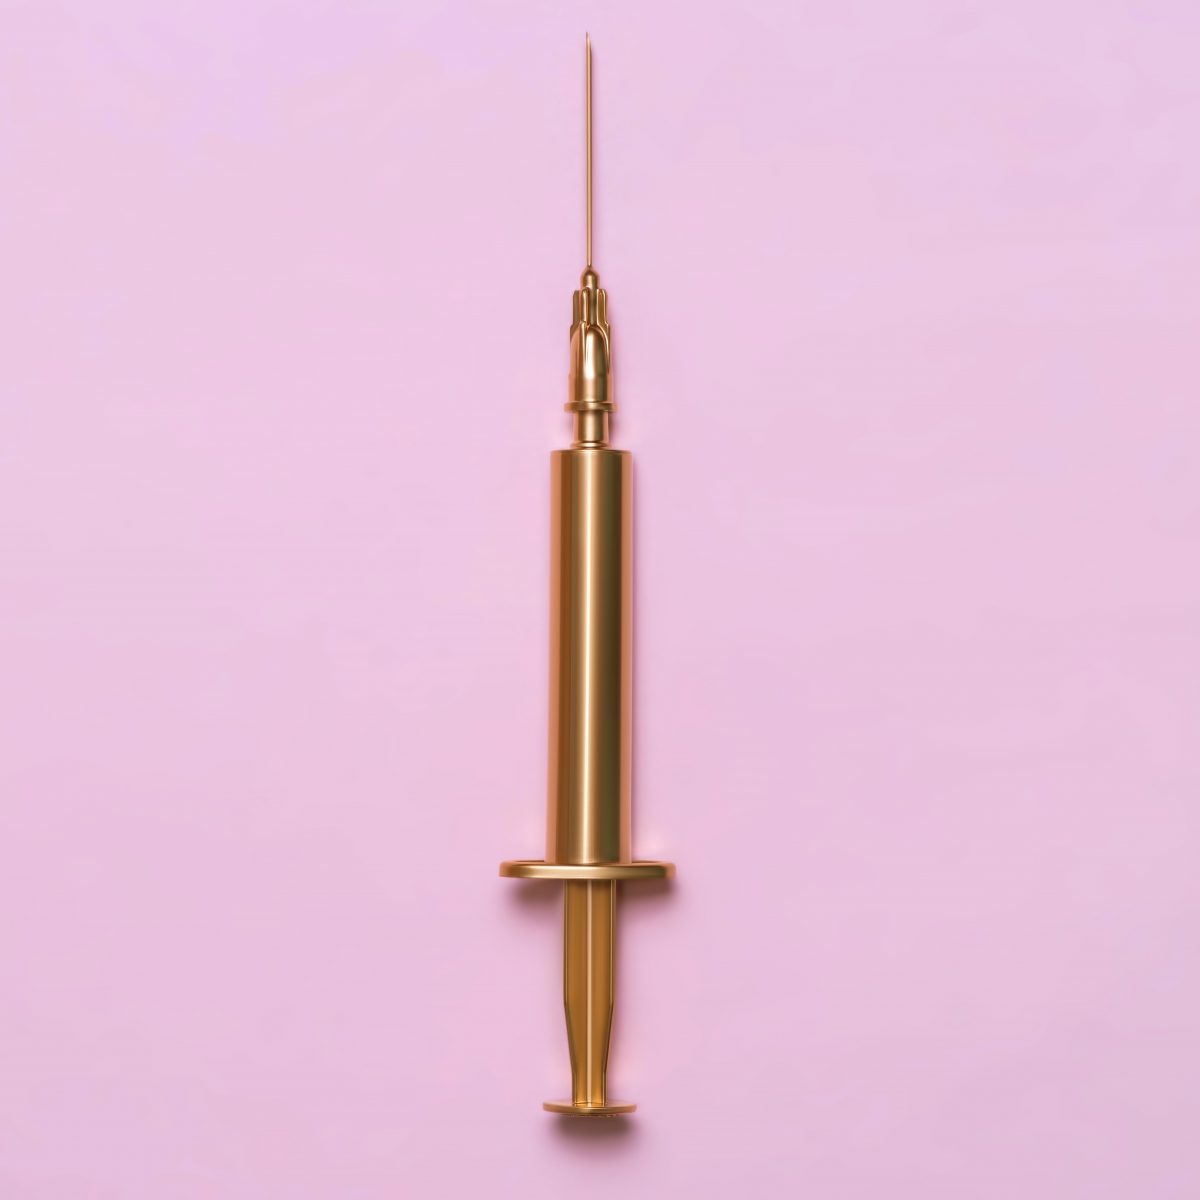 Golden syringe on a pink background. Medical item. Minimalism concept.